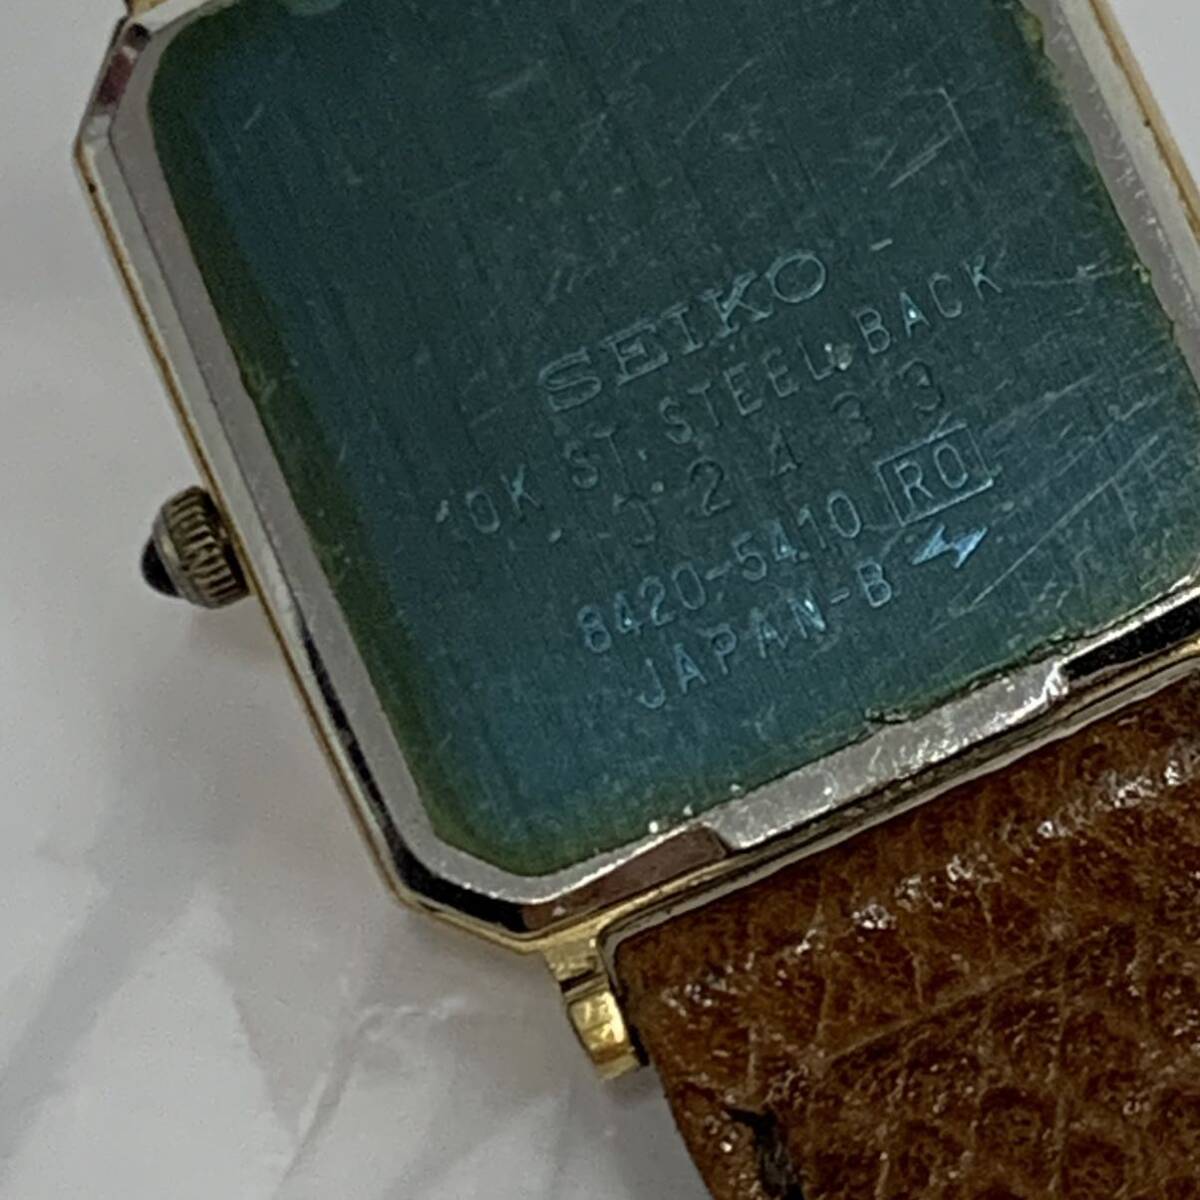  работоспособность не проверялась Seiko SEIKO Exceline EXCELINE кварц 2 стрелки 8420-5410 наручные часы текущее состояние товар ka4